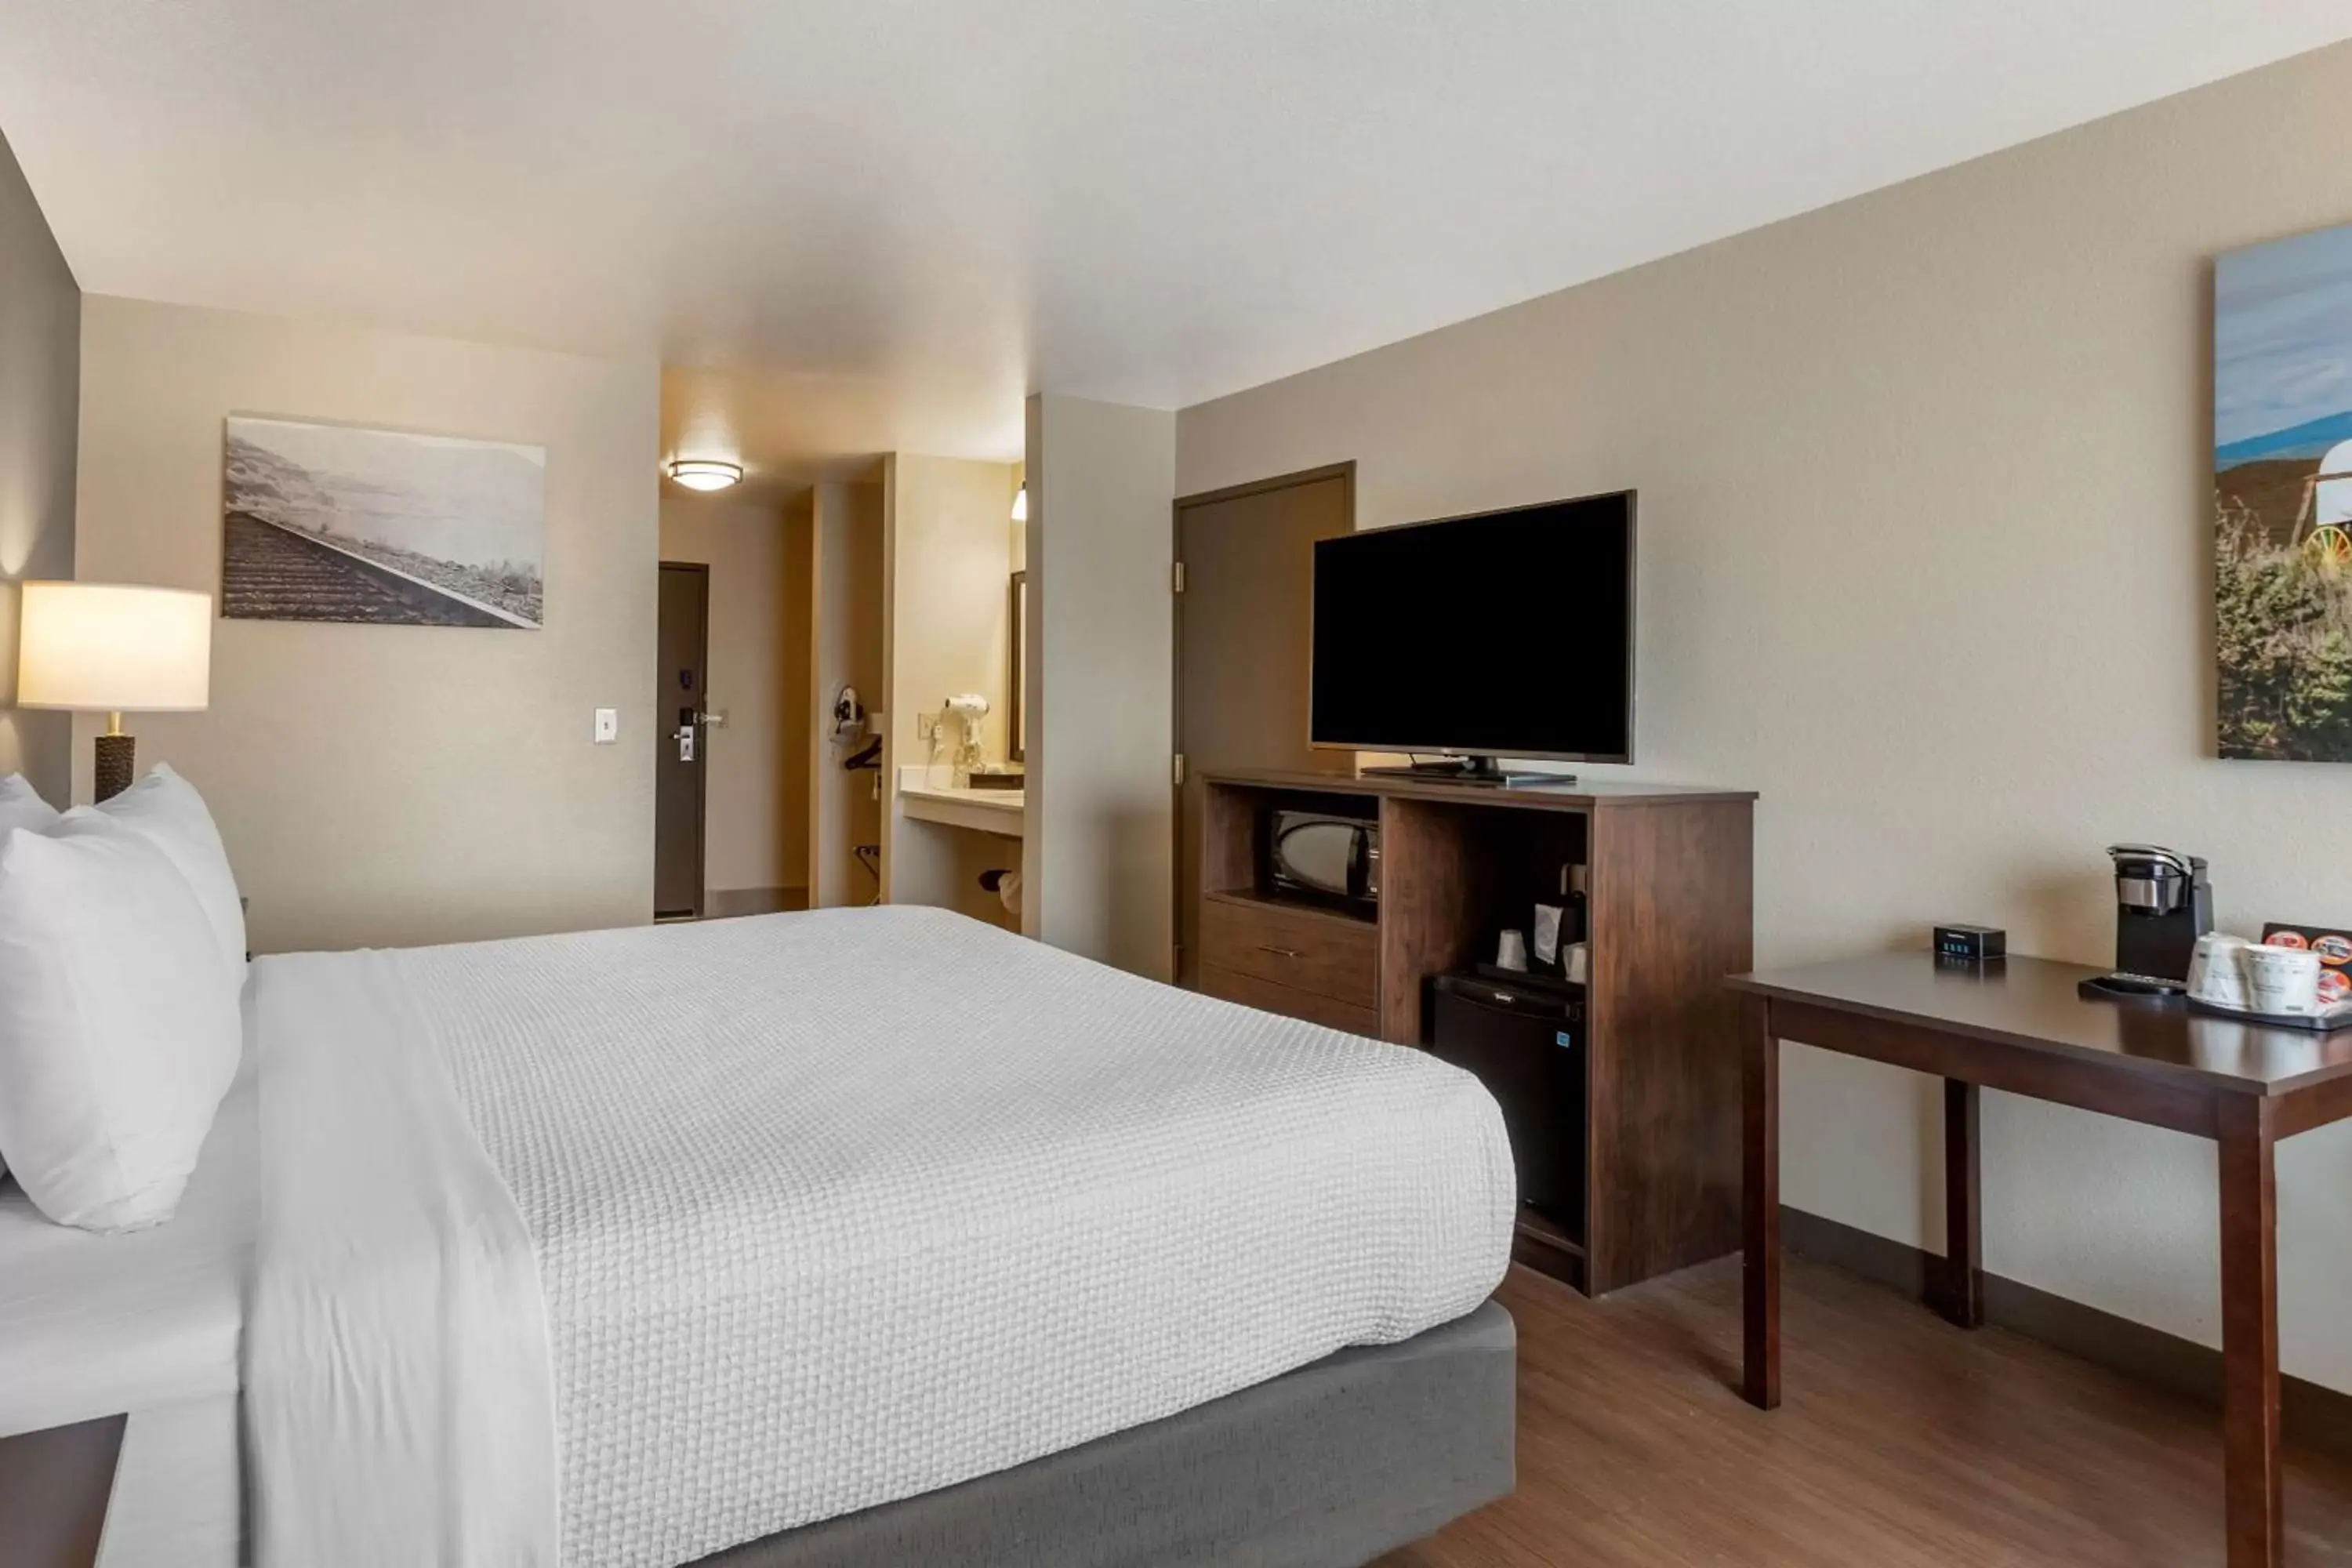 Bedroom, TV/Entertainment Center in Best Western Sunridge Inn & Conference Center